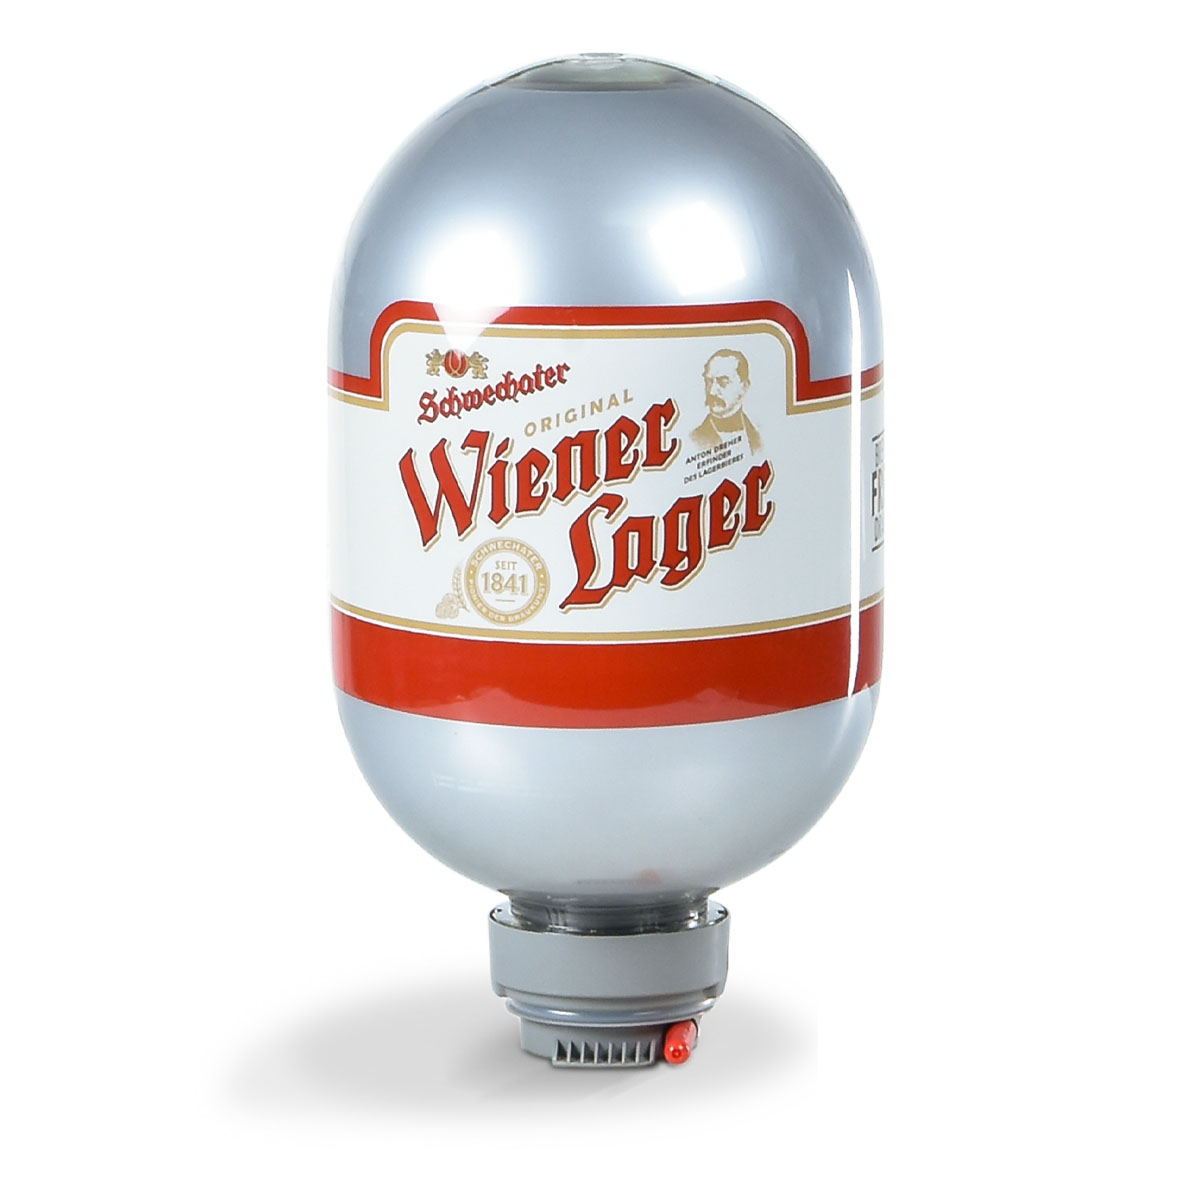 Jubliläumsbier: Schwechater Wiener Lager